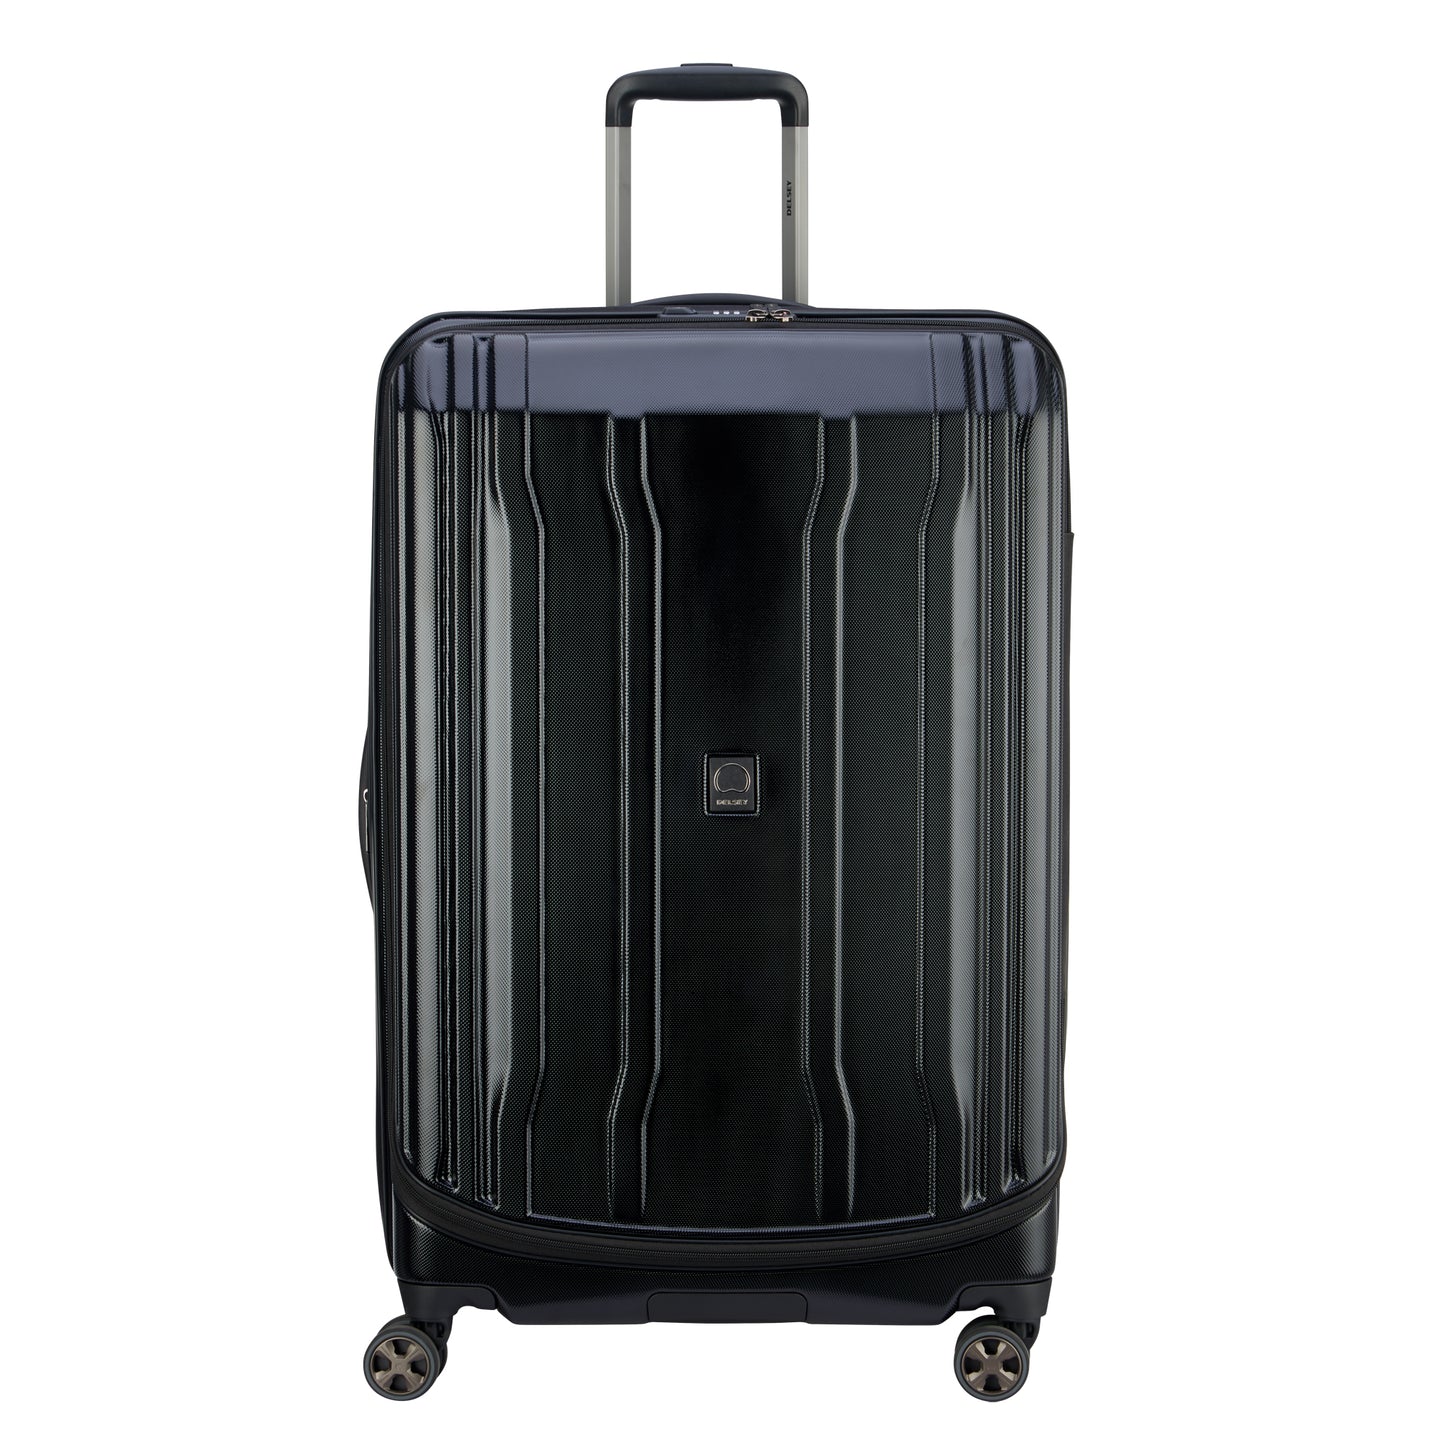 Delsey Cruise Lite Hardcase 2.0 Luggage (LARGE)